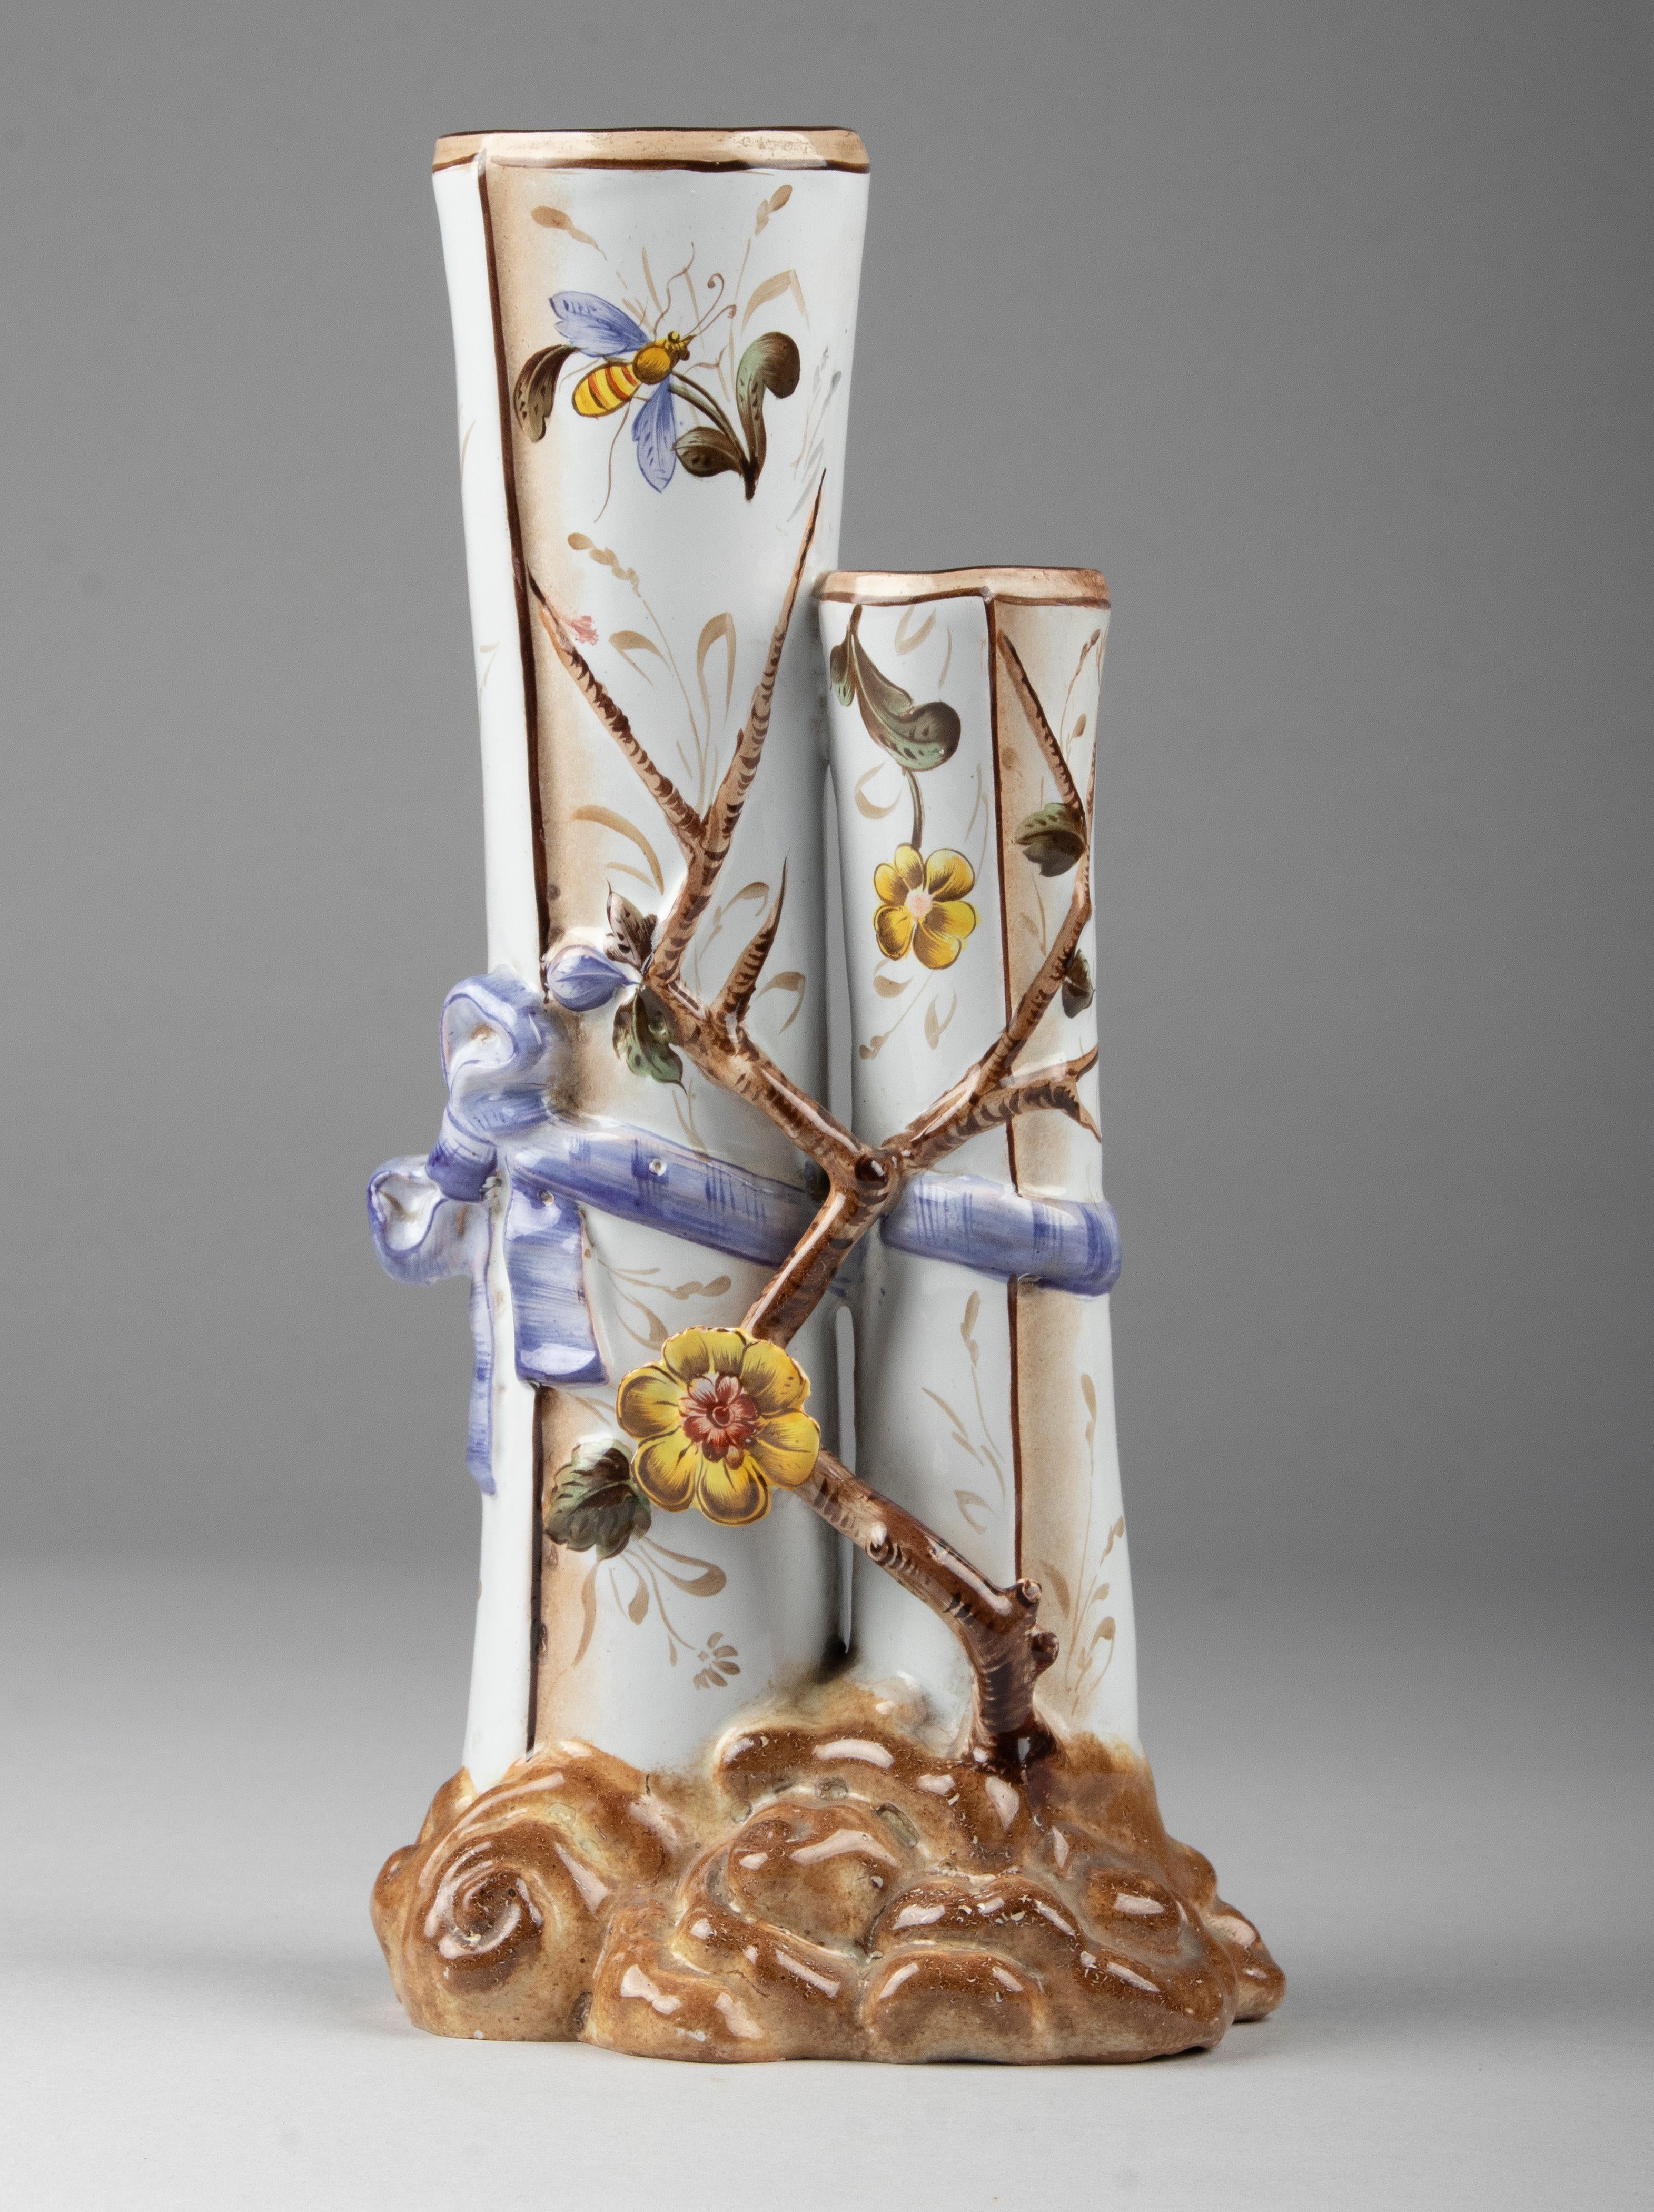 Beau vase Art Nouveau en céramique, signé du pied Saint Clément.
Le vase est peint à la main avec des fleurs, des branches et des insectes. Le vase est en très bon état.